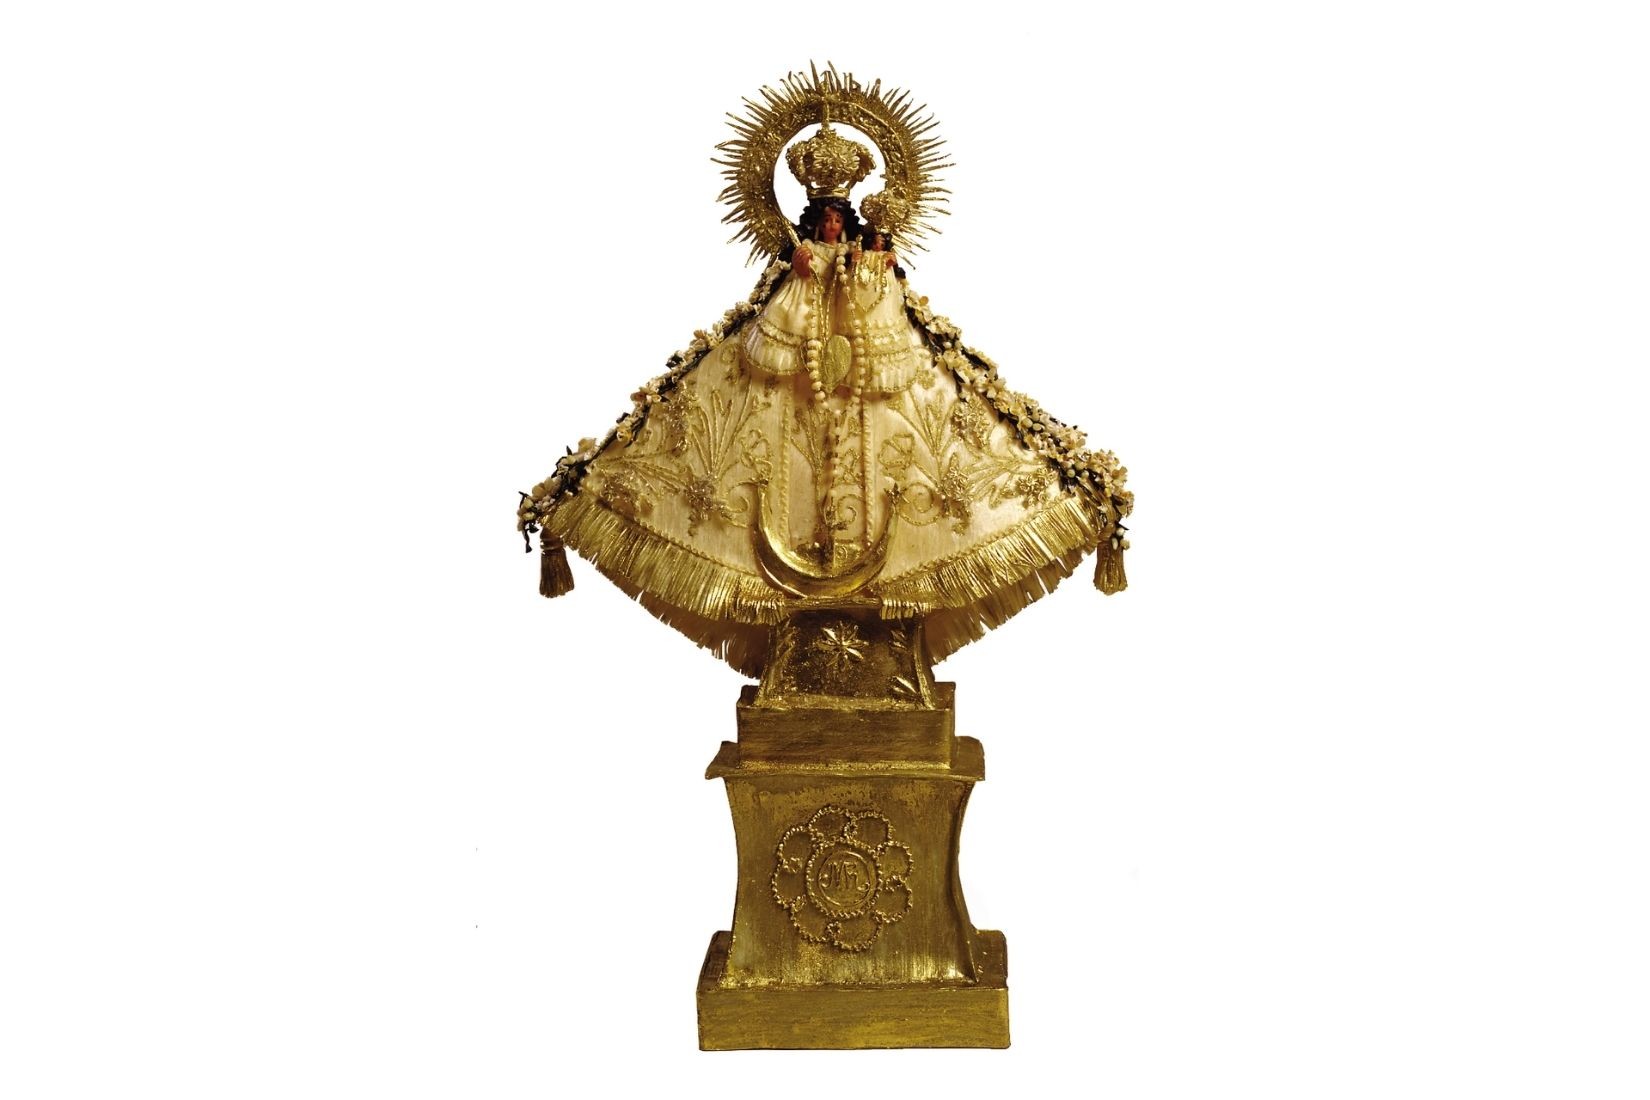 Virgen de Talpa. Chicle modelado y entintado. Artesana Ma. de la luz y Librada López Morán. Talpa de Allende, Jal. 2000. Col. María Teresa Pomar. (Foto: Nicola Lorusso).